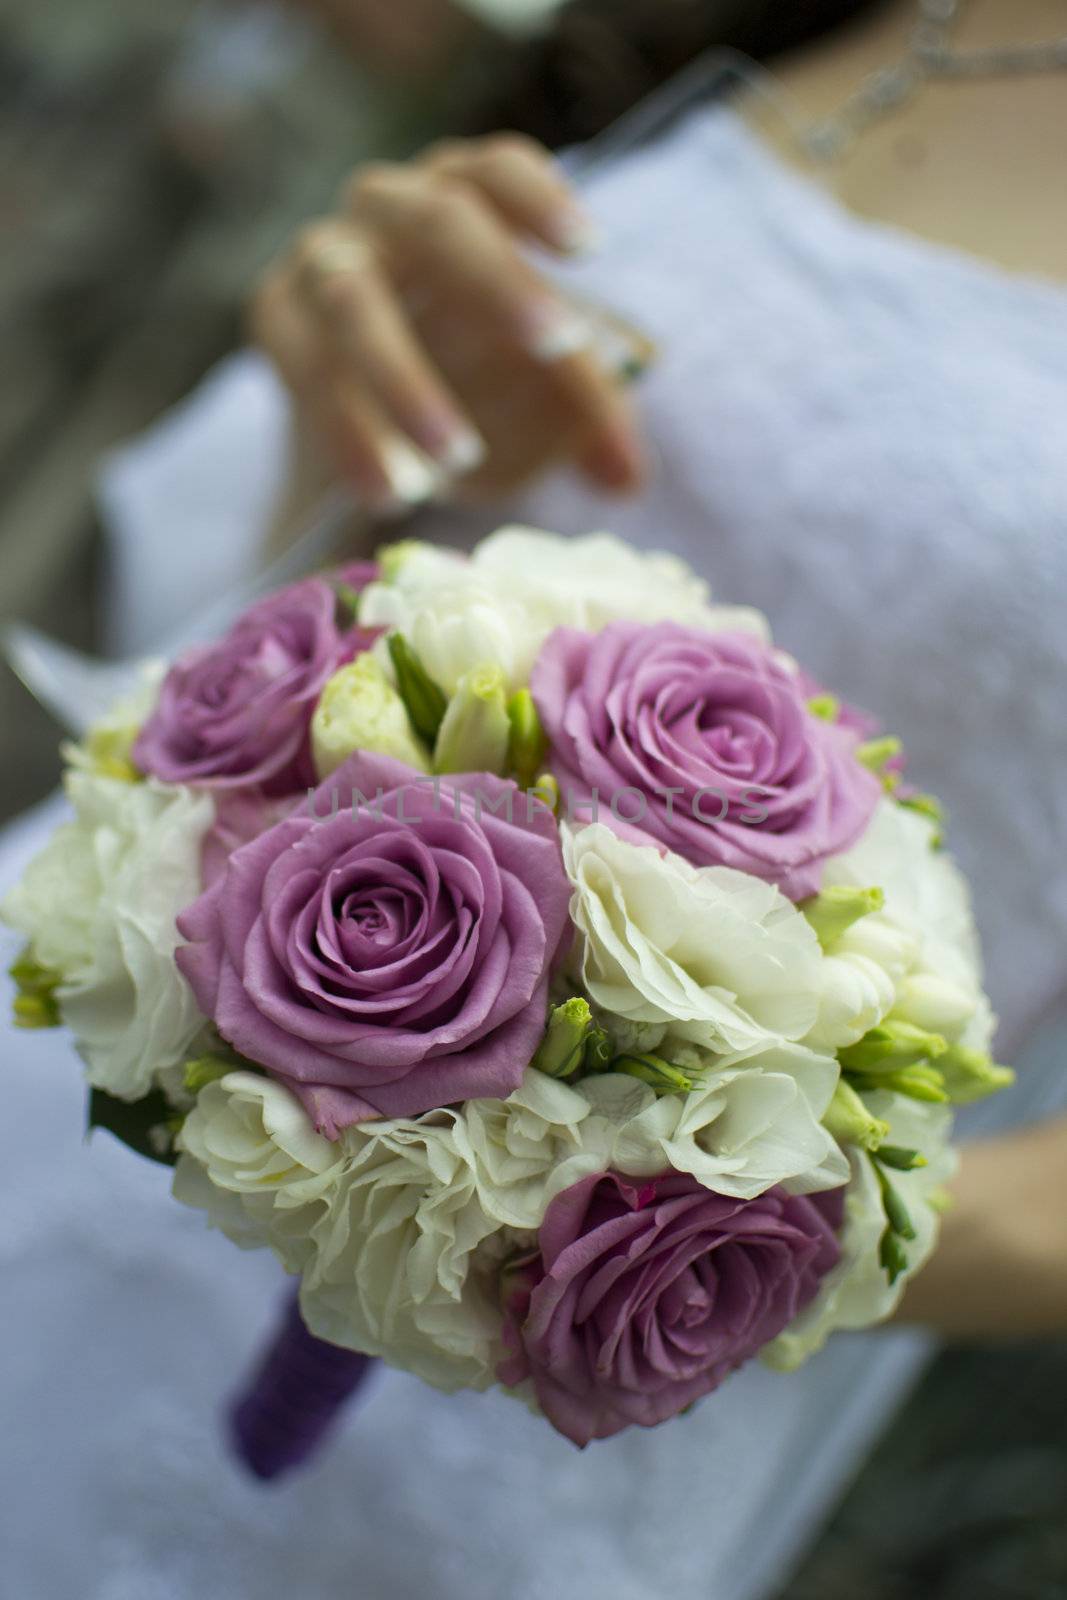 Elegant wedding bouquet by only4denn